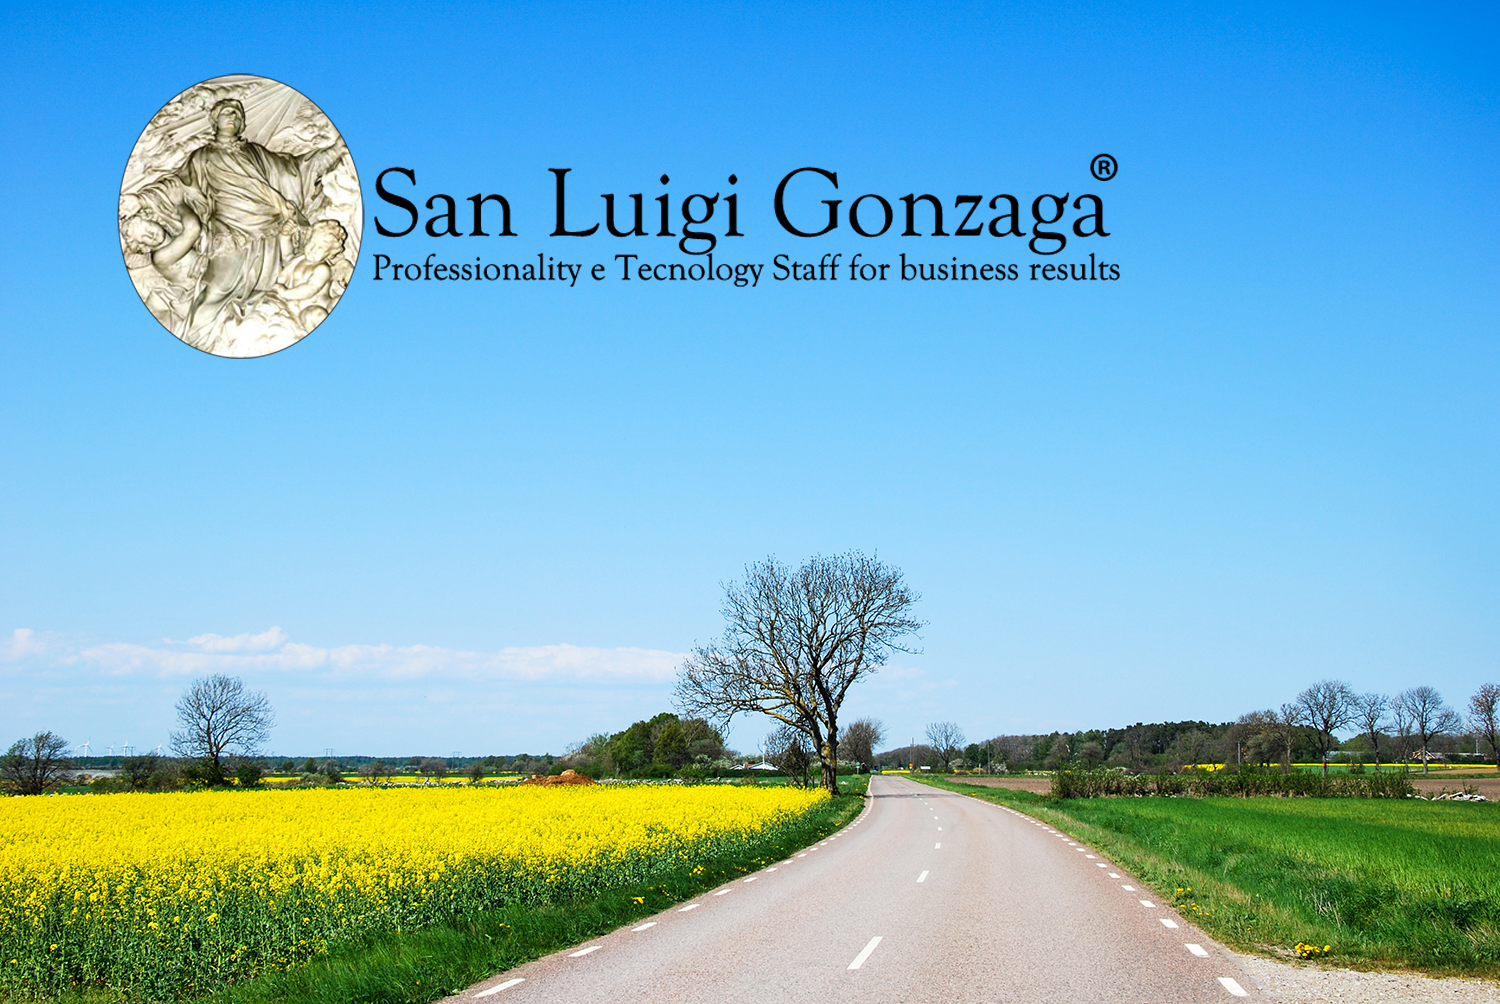 //www.sanluigigonzaga.eu/ialulady/wp-content/uploads/2021/11/San-Luigi-Gonzaga-Sostenibilita-ambientale.png